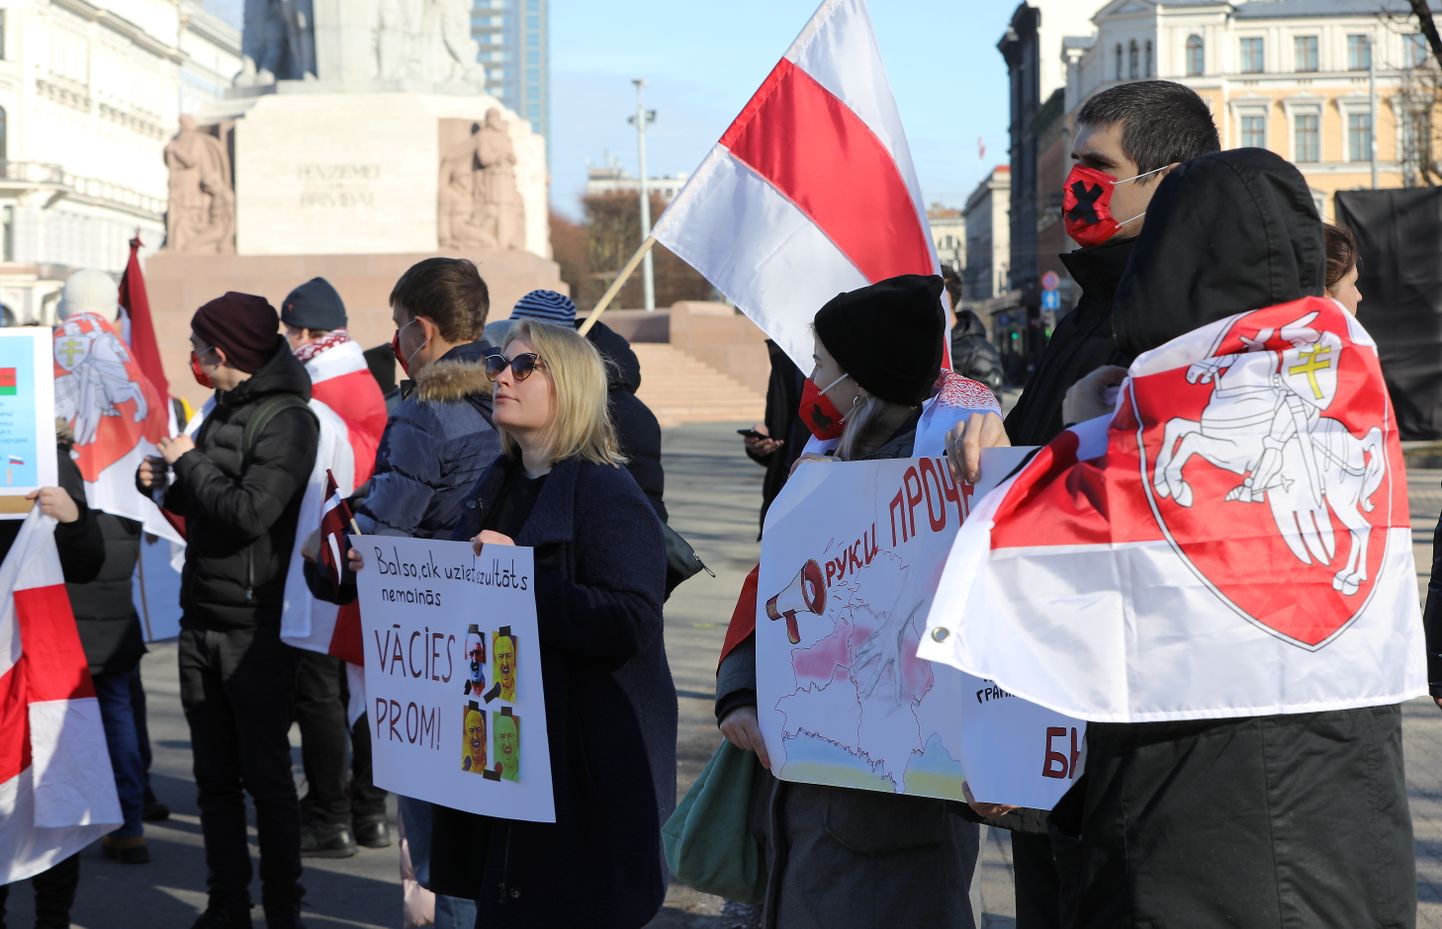 Brīvības pieminekļa laukumā notiek baltkrievu diasporas rīkotais pikets saistībā ar Baltkrievijā notiekošo referendumu par konstitūcijas grozījumiem, kuri paredz vēl vairāk nostiprināt Aleksandra Lukašenko režīmu un viņa iespējas atrasties pie varas.